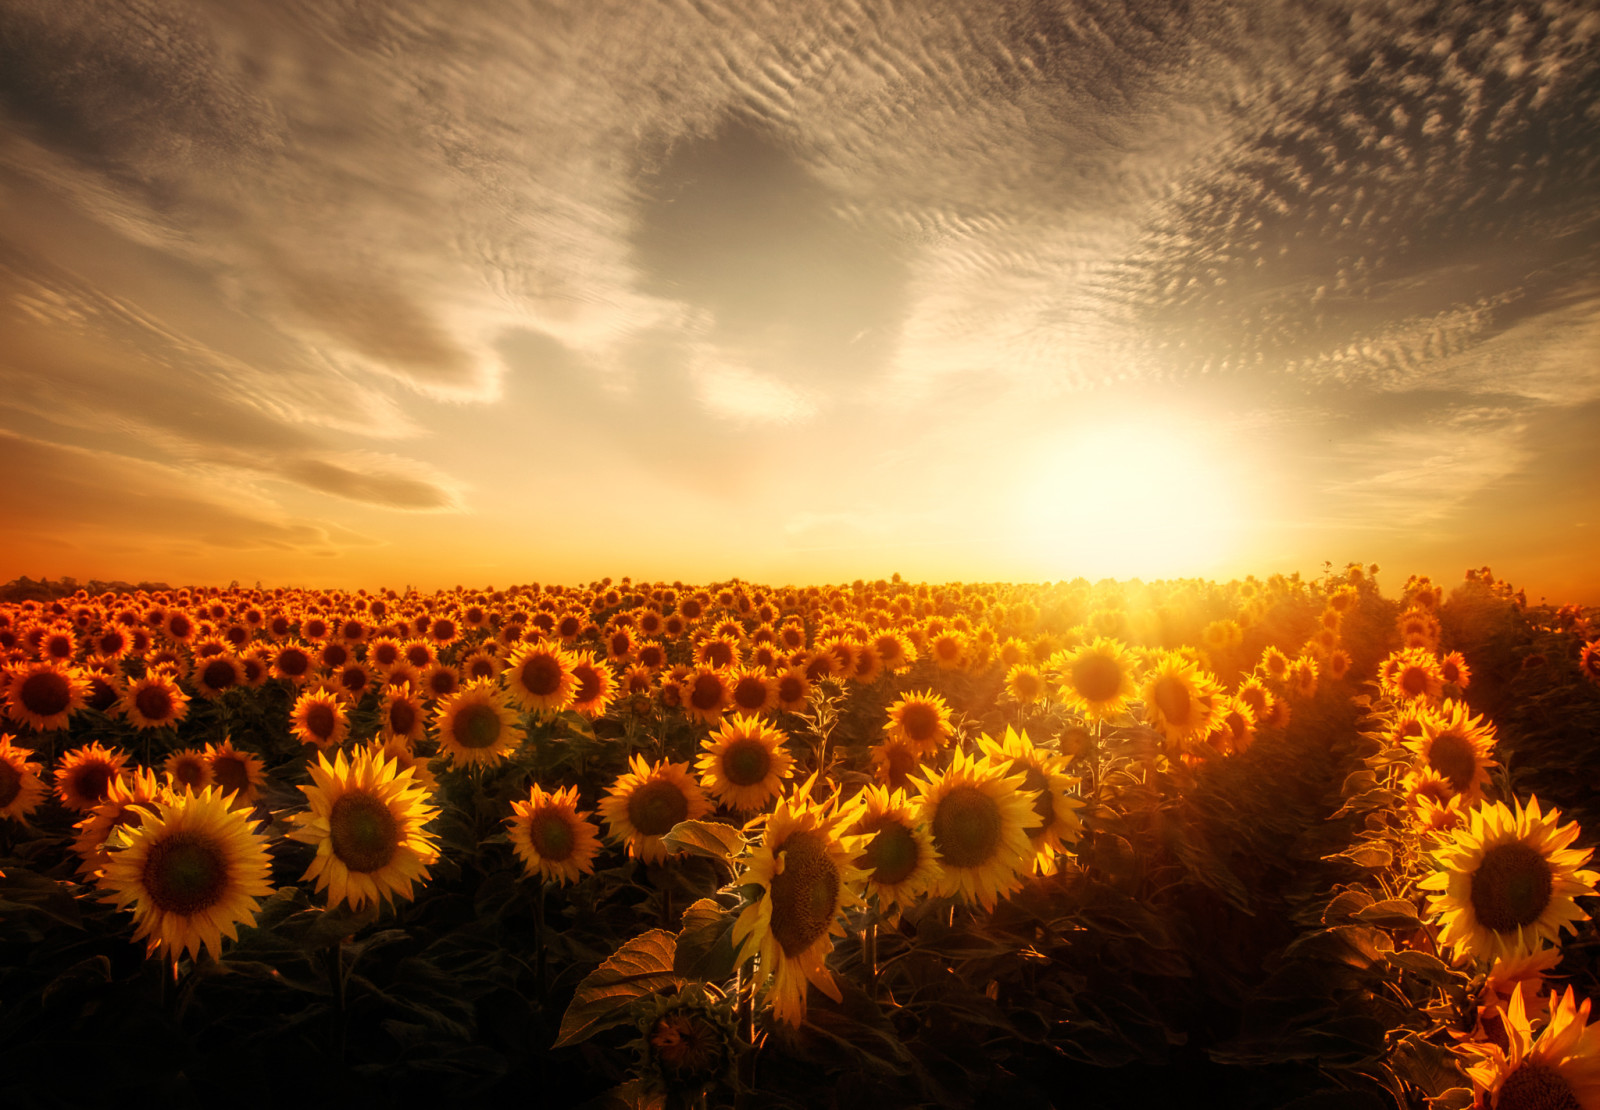 bidang, matahari, bunga matahari